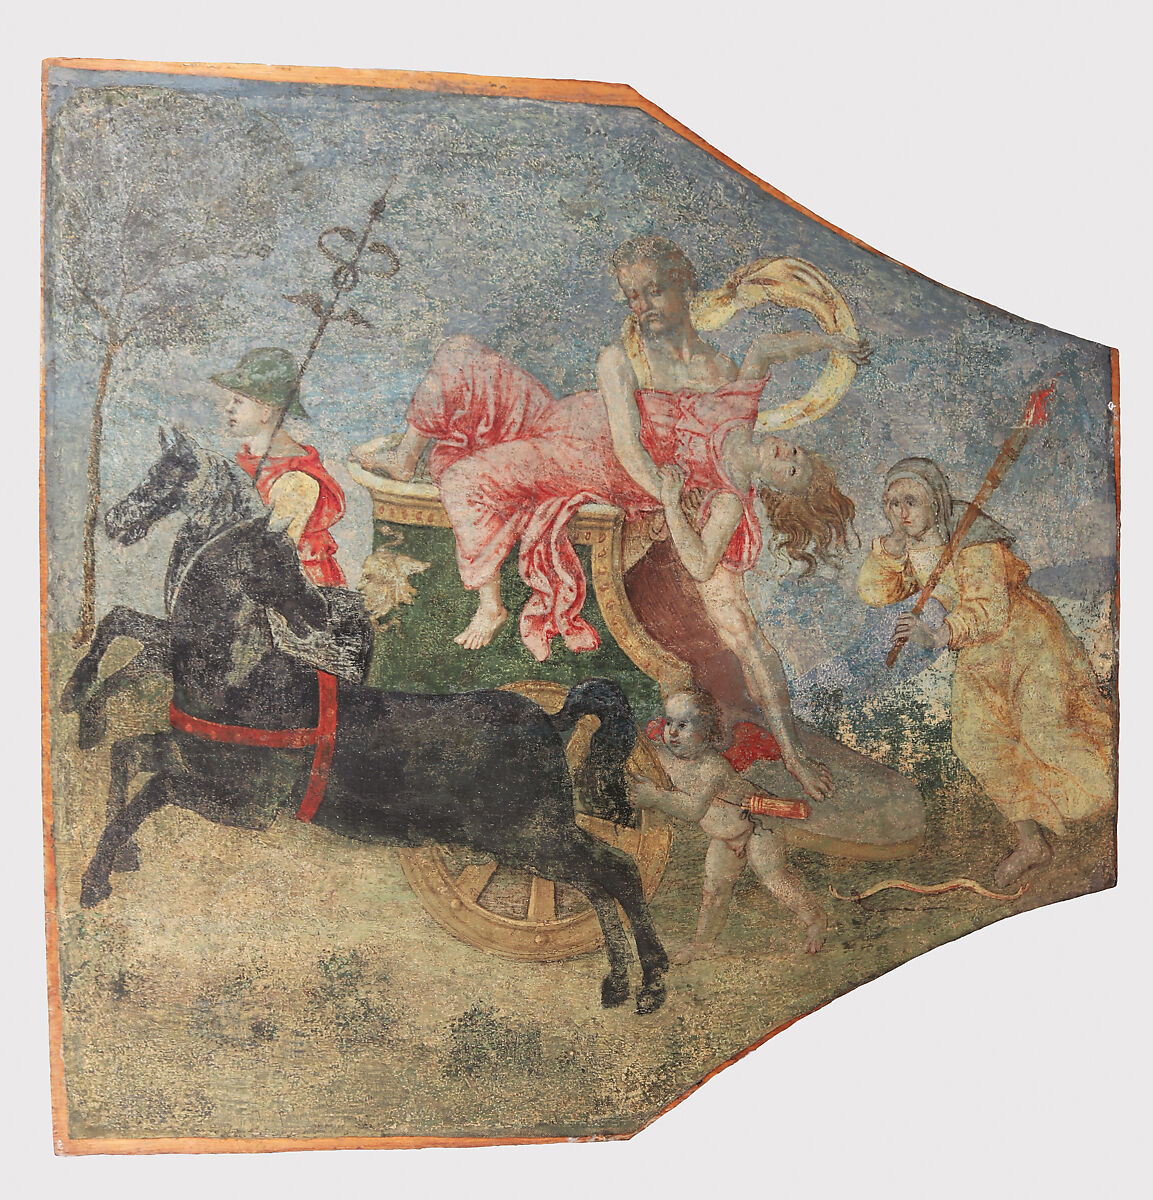 Pinturicchio, Viol de Proserpine, du plafond du Palazzo del Magnifico (vers 1509 ; fresque transférée sur toile et transférée sur panneau, 78,7 x 80,6 cm ; New York, Metropolitan Museum)